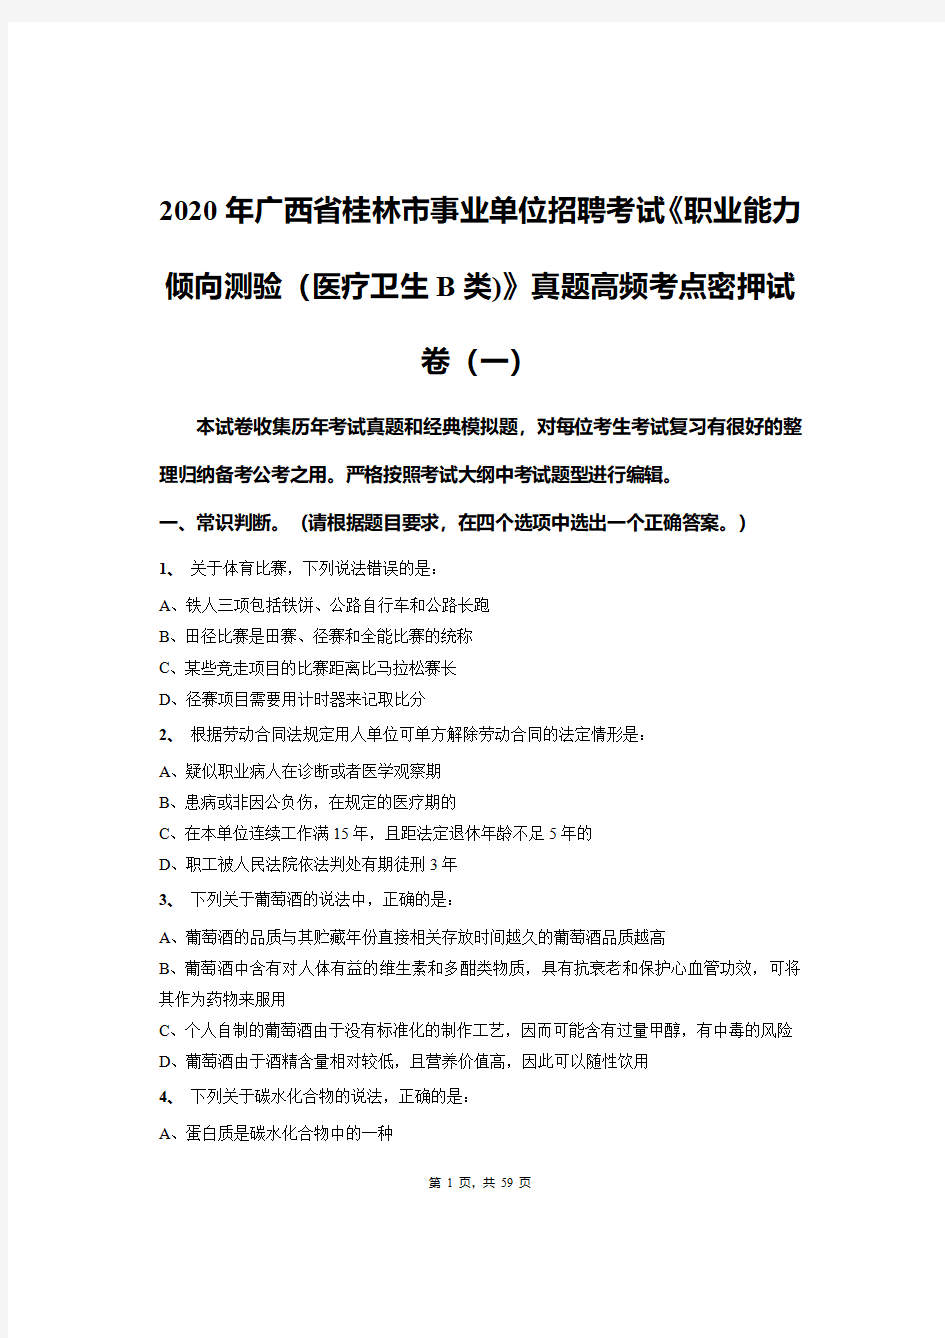 2020年广西省桂林市事业单位招聘考试《职业能力倾向测验(医疗卫生B类)》真题高频考点密押试卷